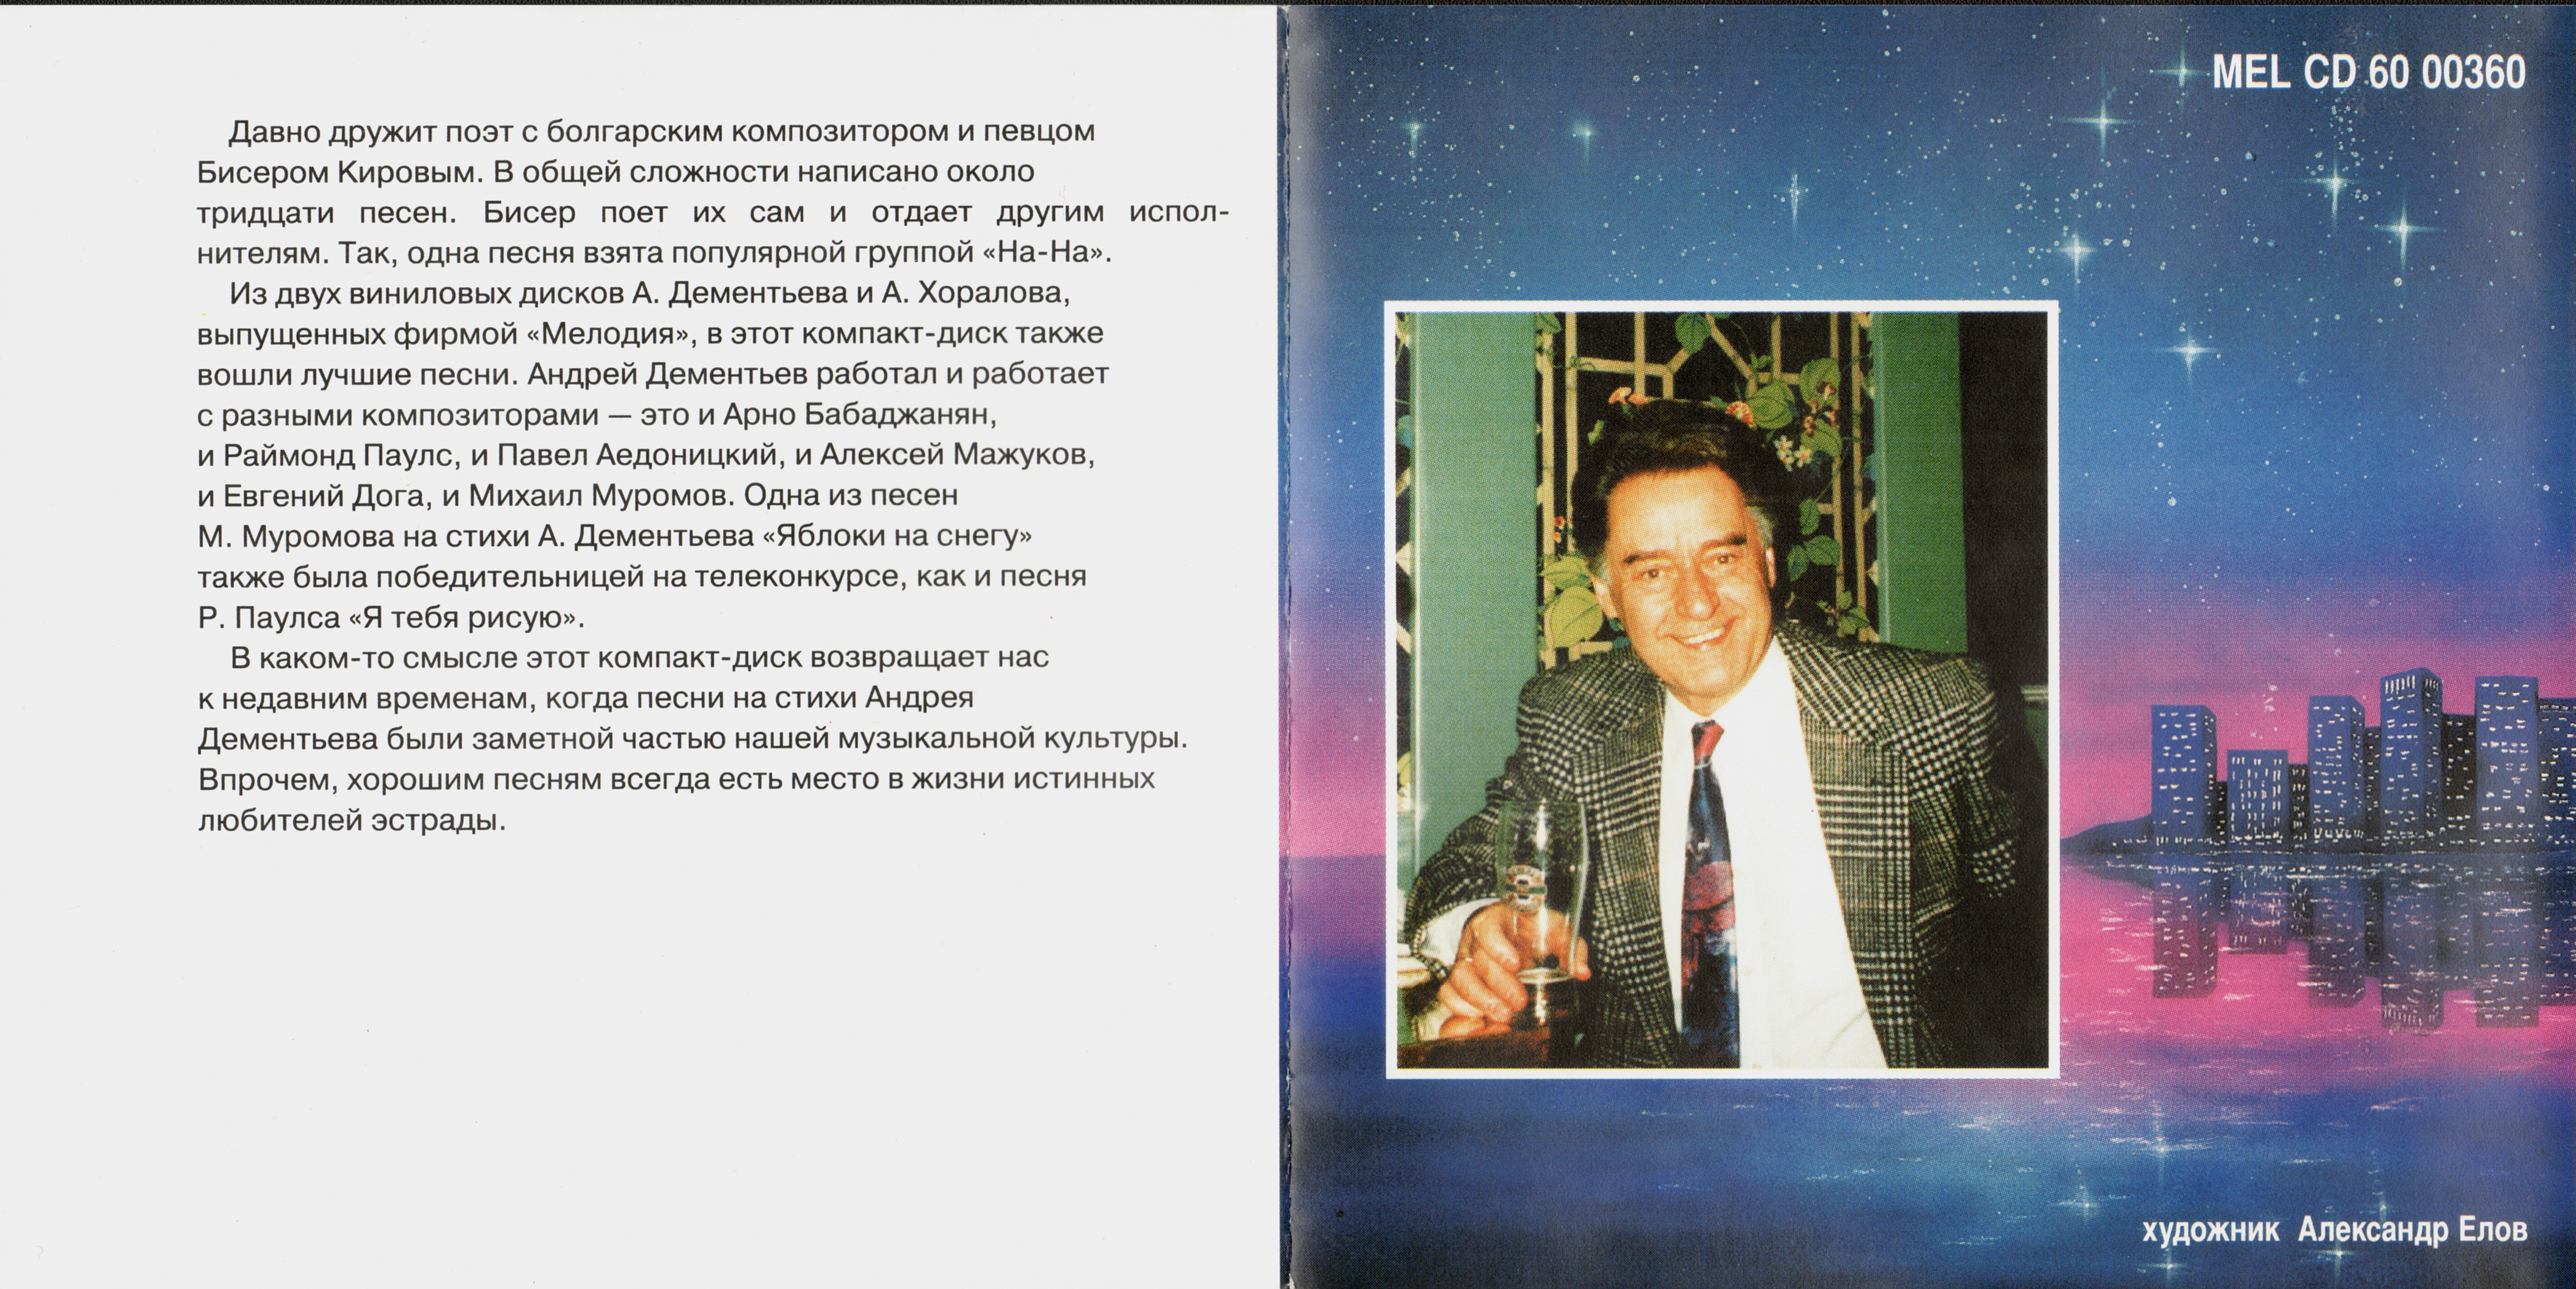 Андрей Дементьев. Созвездие любви